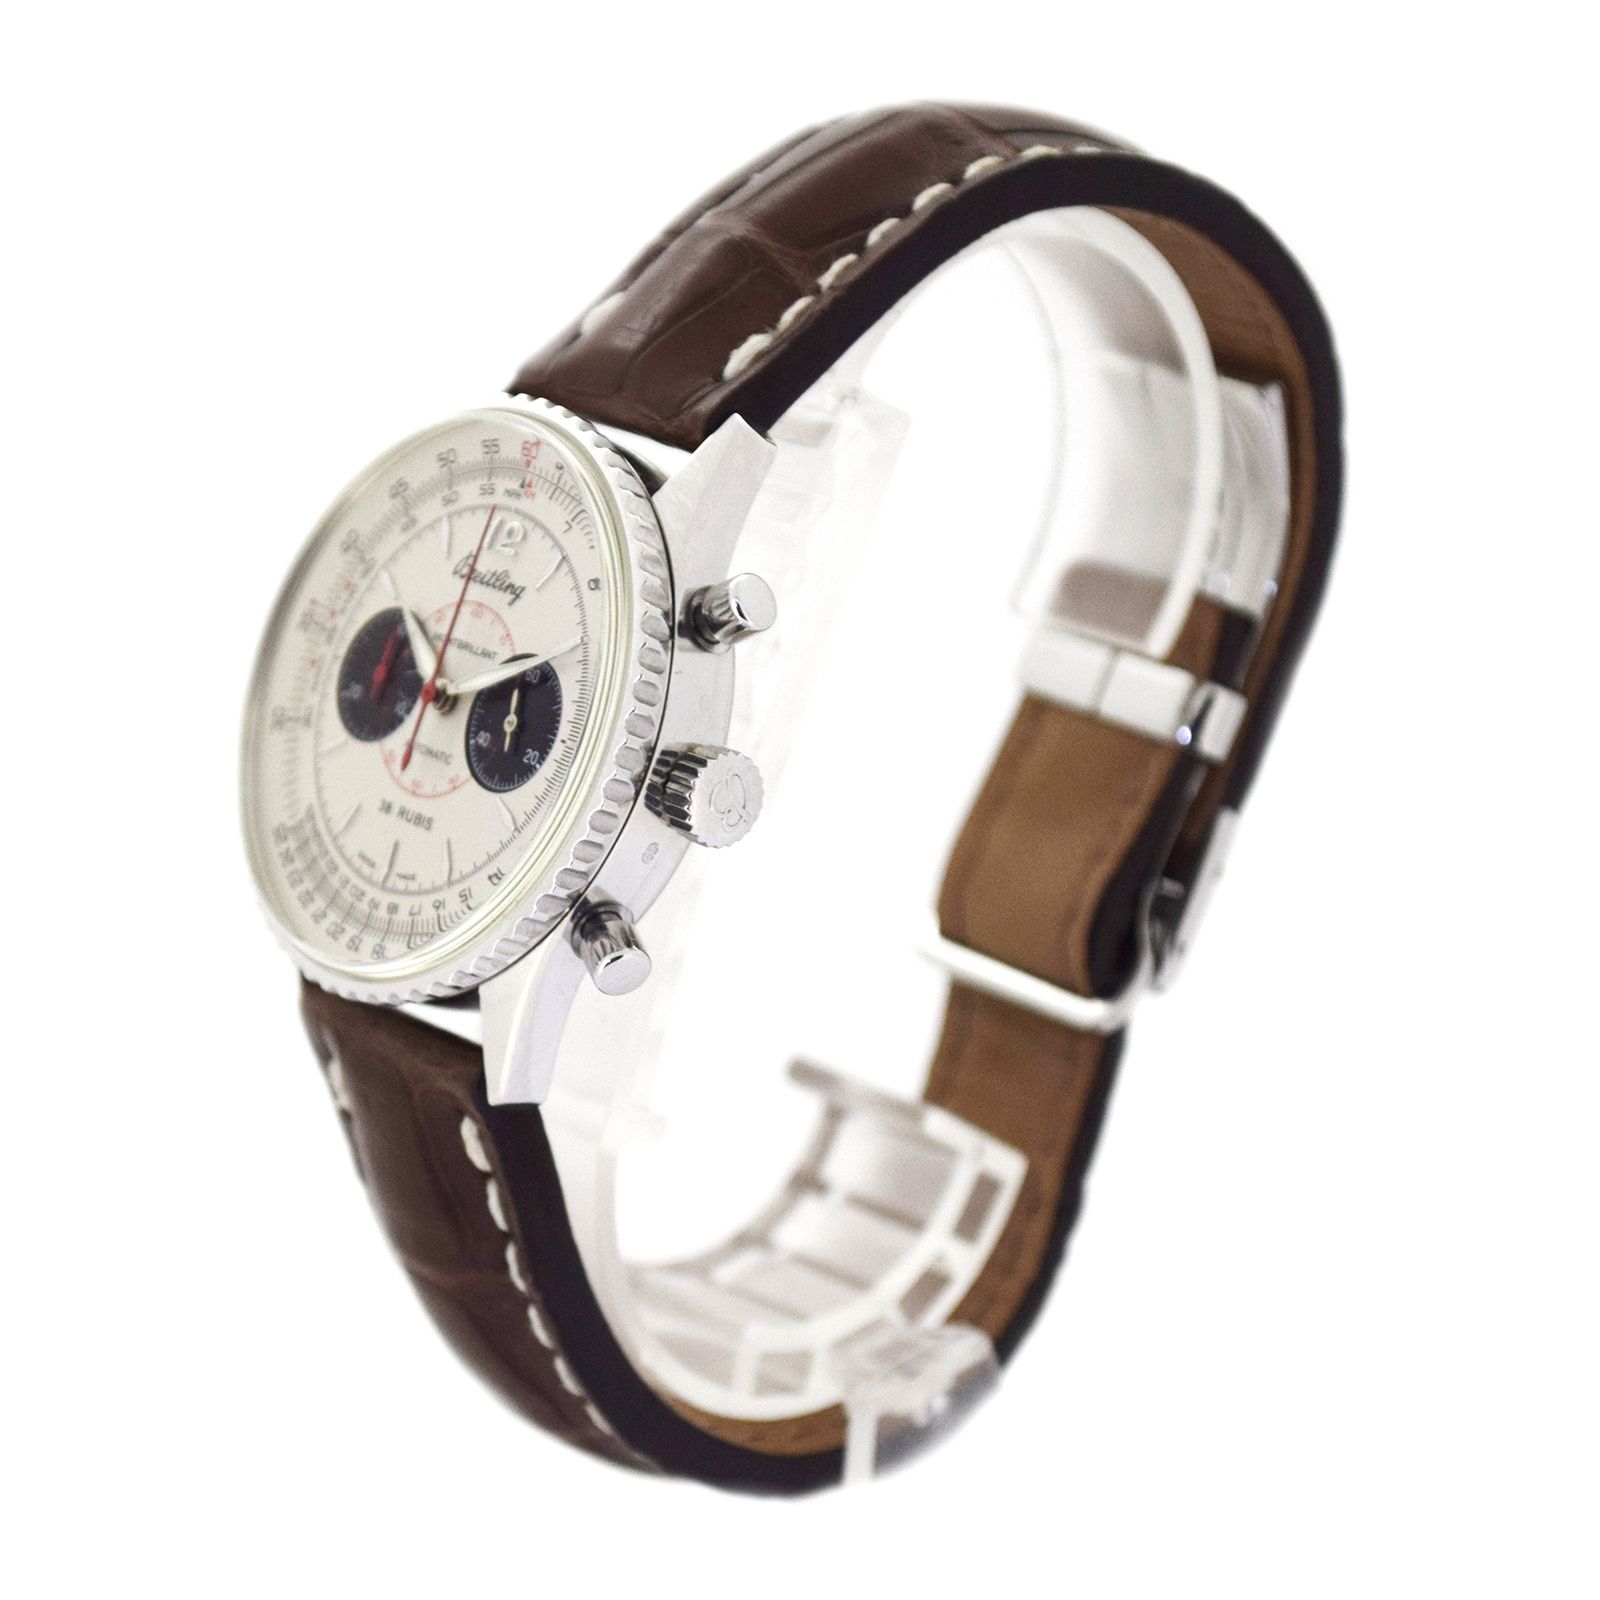 100本限定 K18WG BREITLING ブライトリング  ナビタイマー00  J47330  メンズ 腕時計